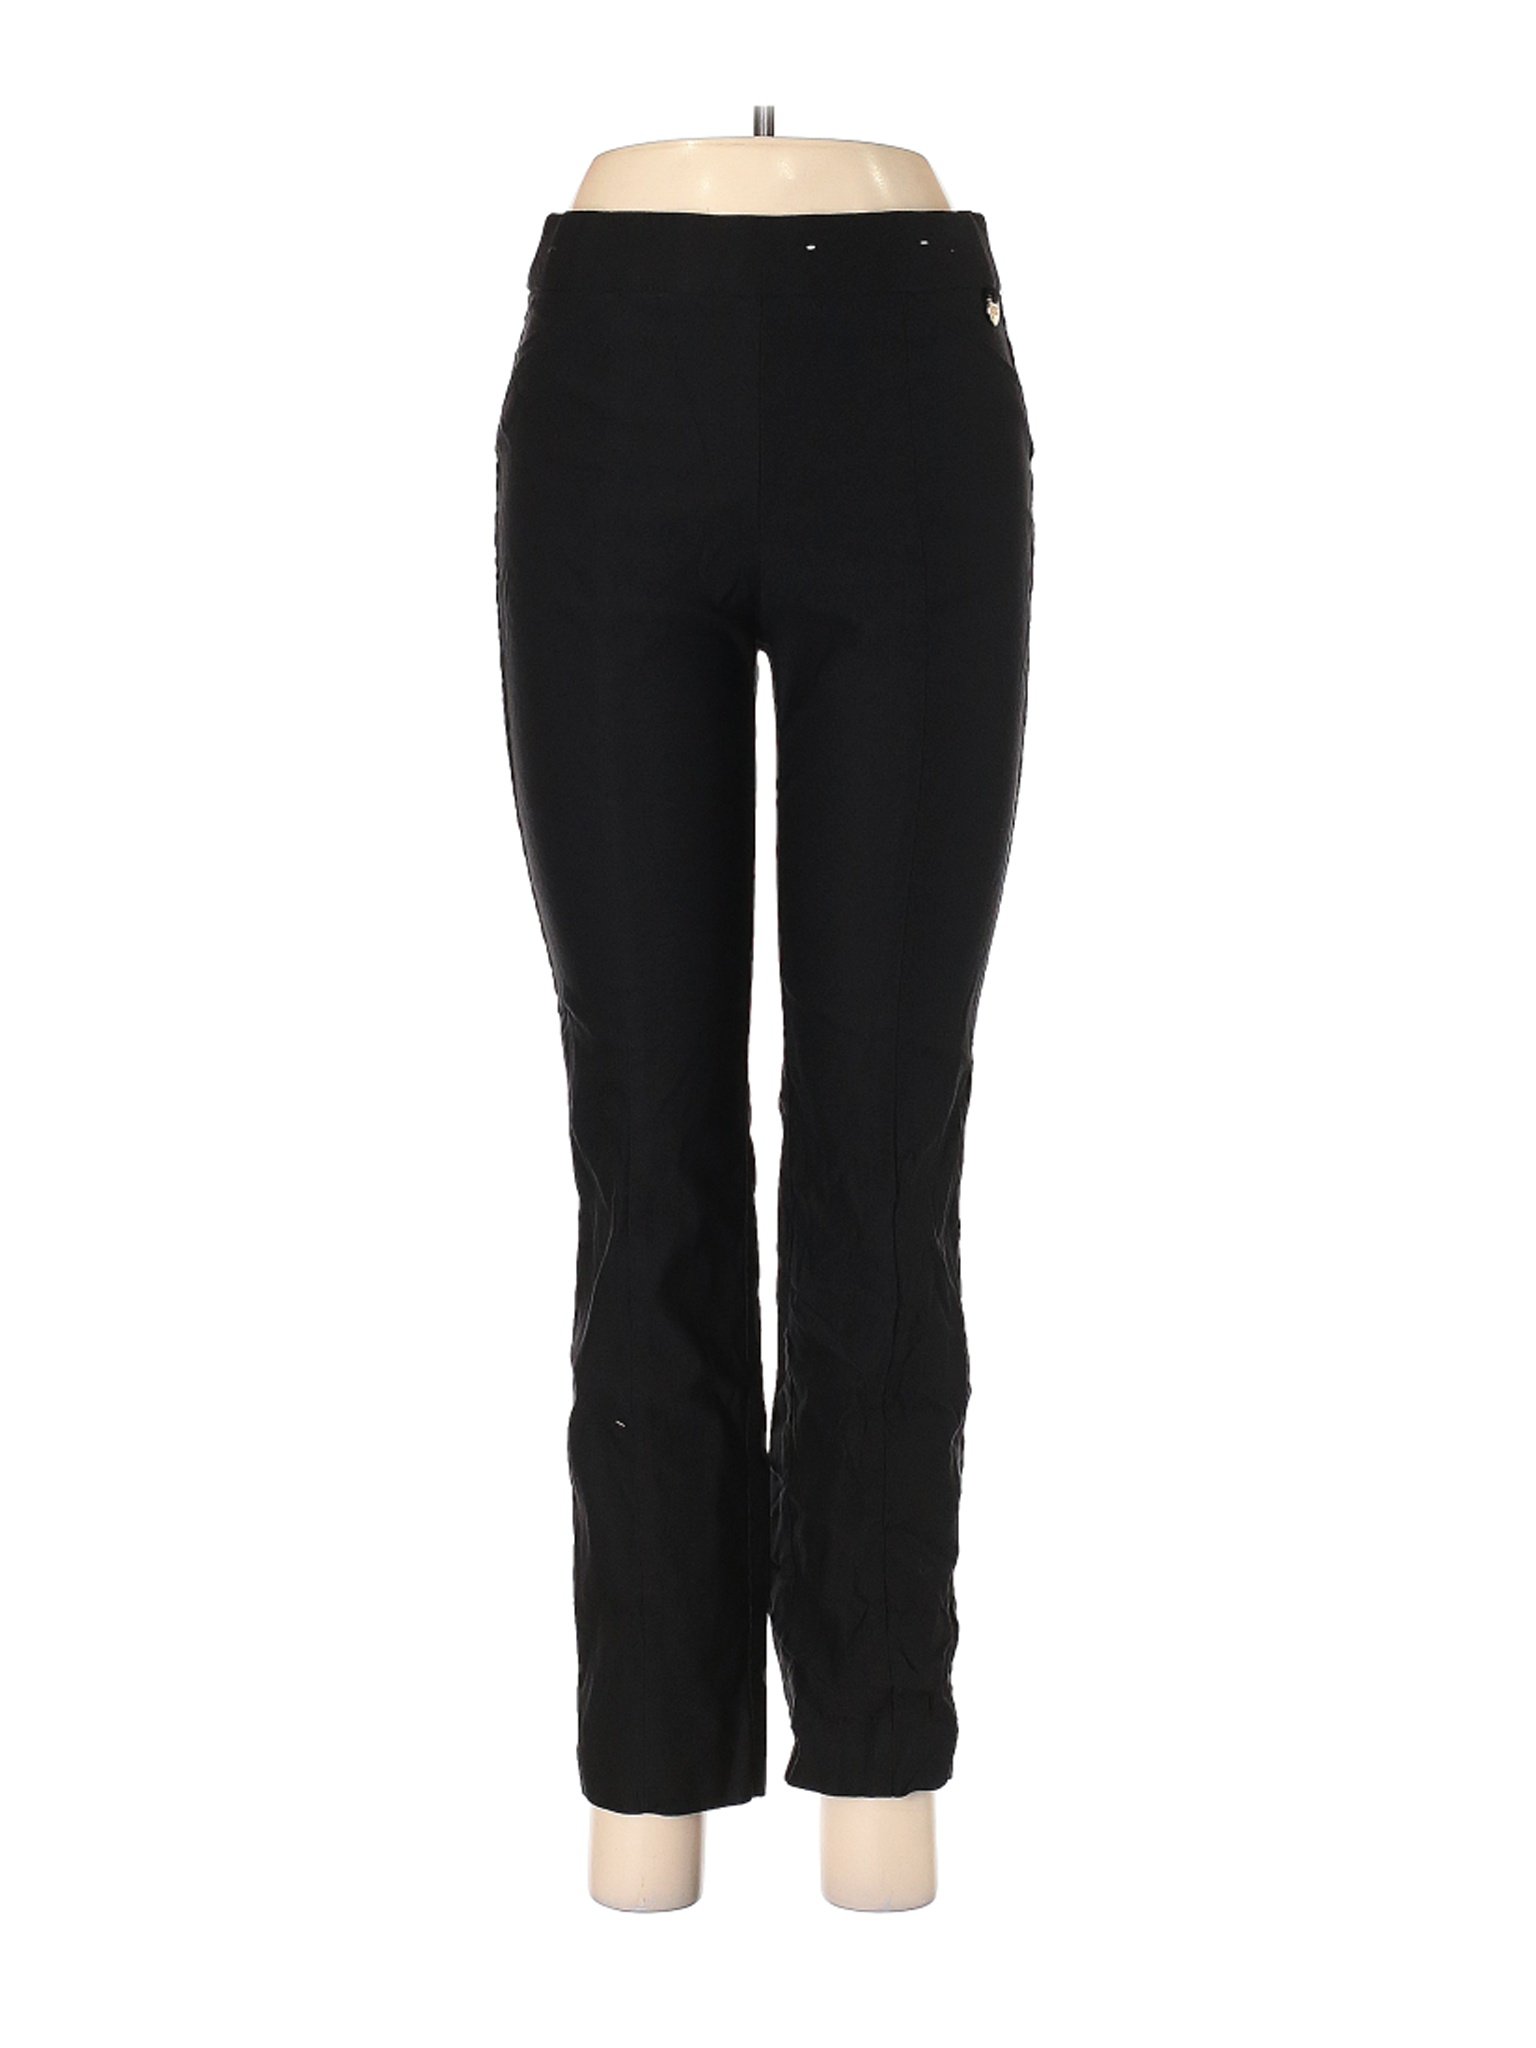 Company Ellen Tracy Women Black Dress Pants M | eBay